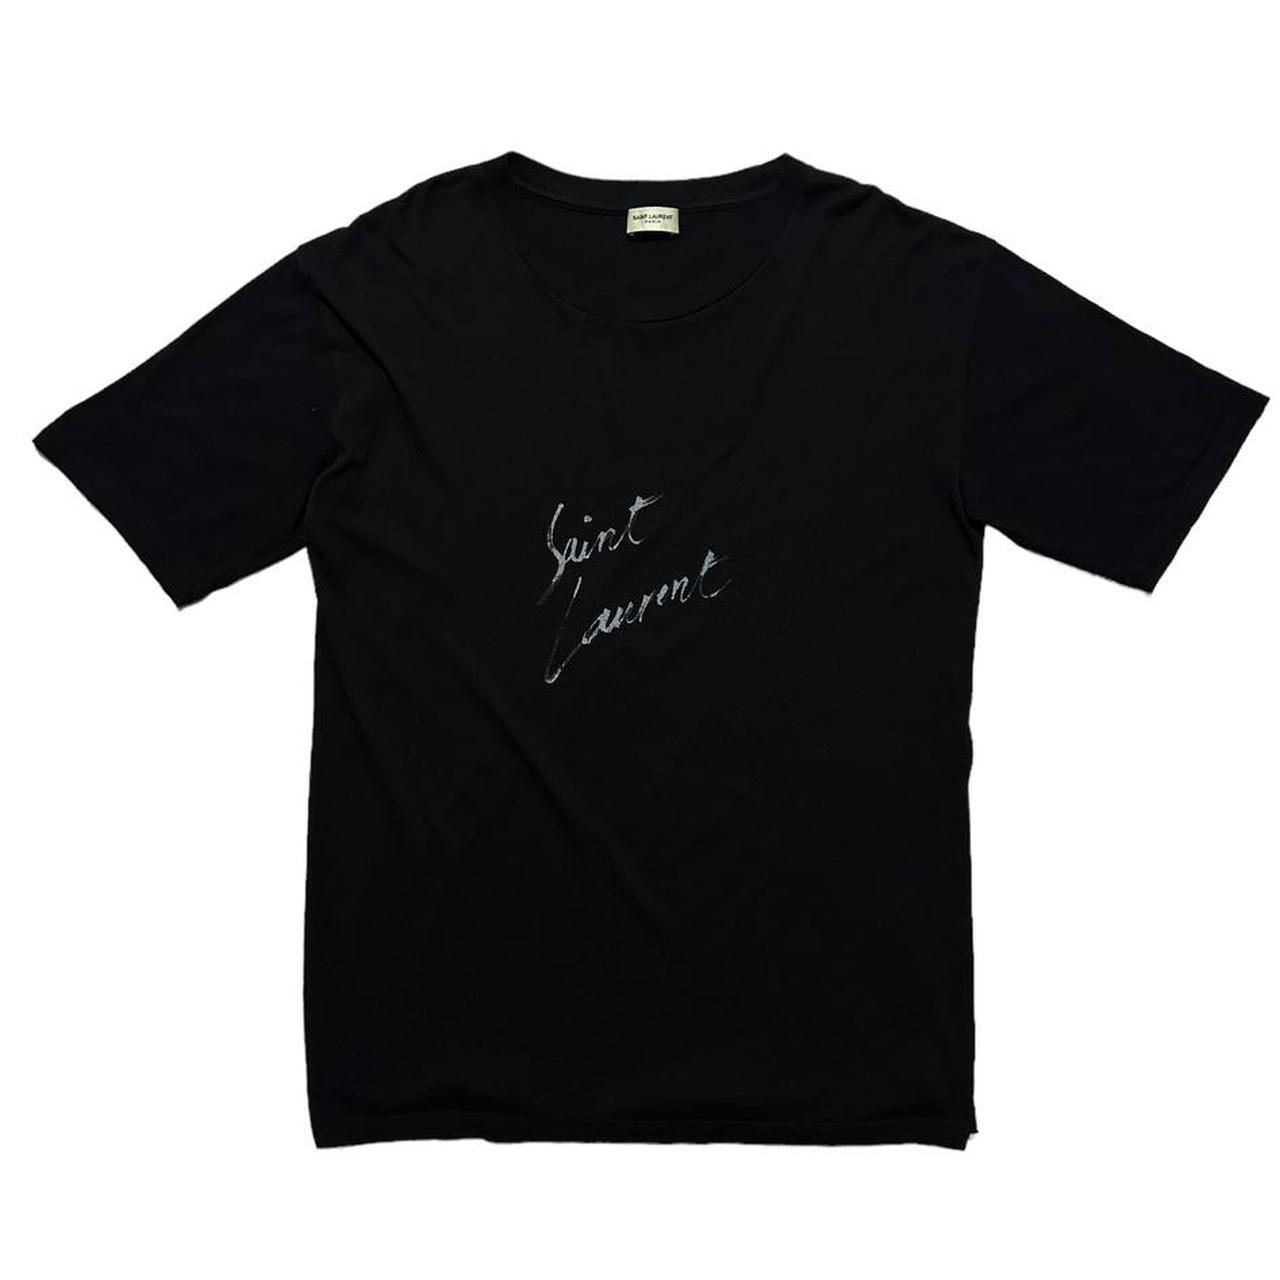 Saint Laurent Front Print Black T-Shirt - Known Source